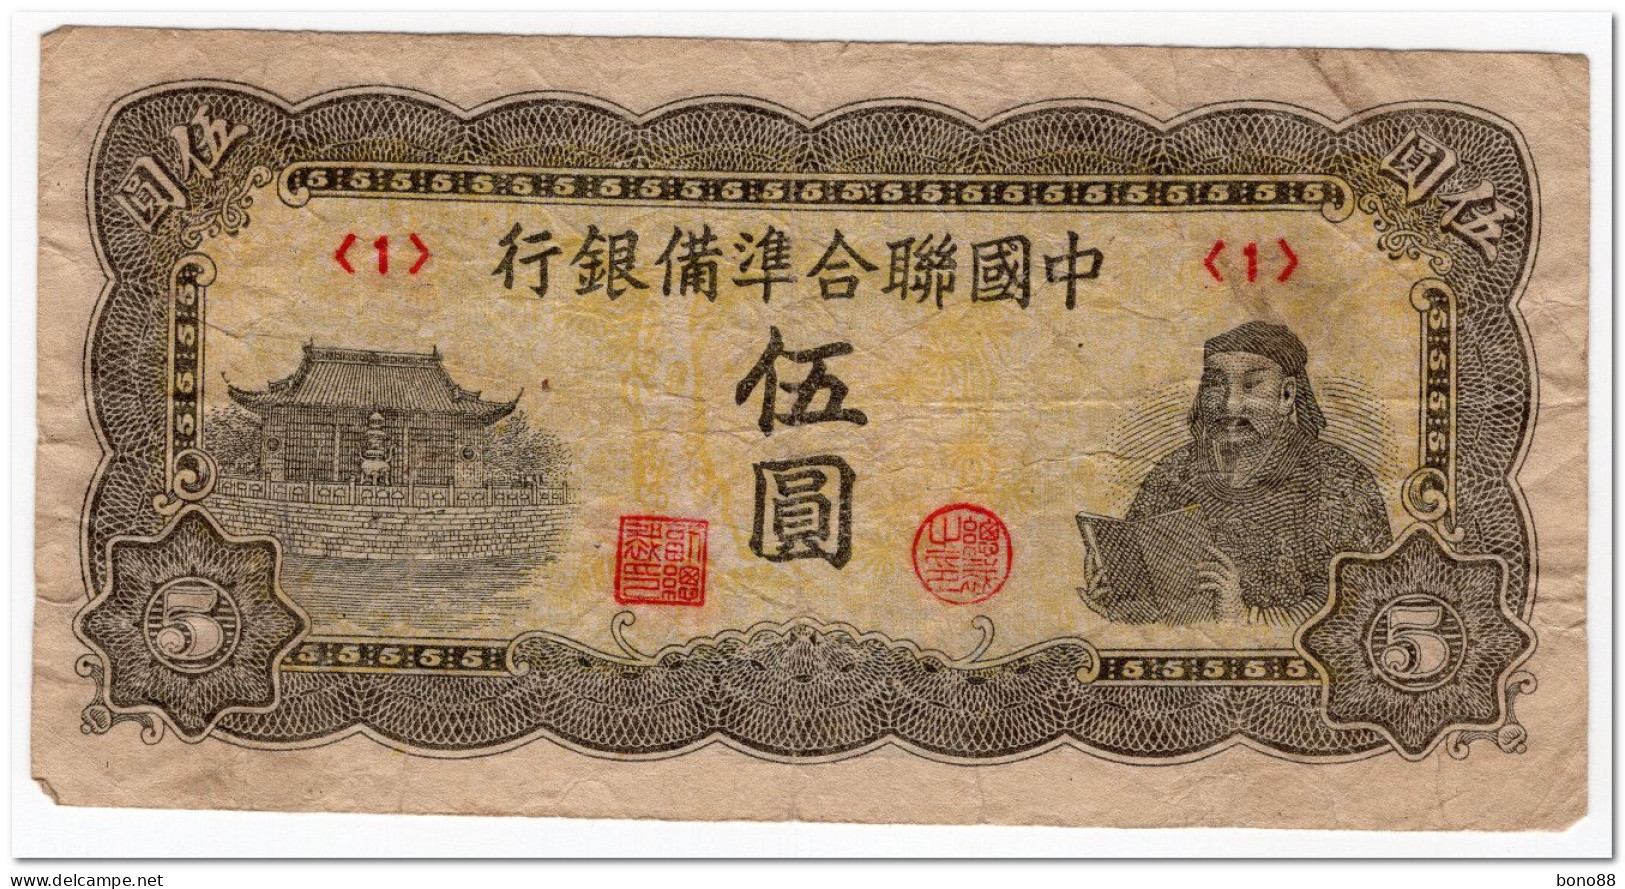 CHINA,FEDERAL RESERVE BANK,5 YUAN,1944,P.J79,CIRCULATED - China